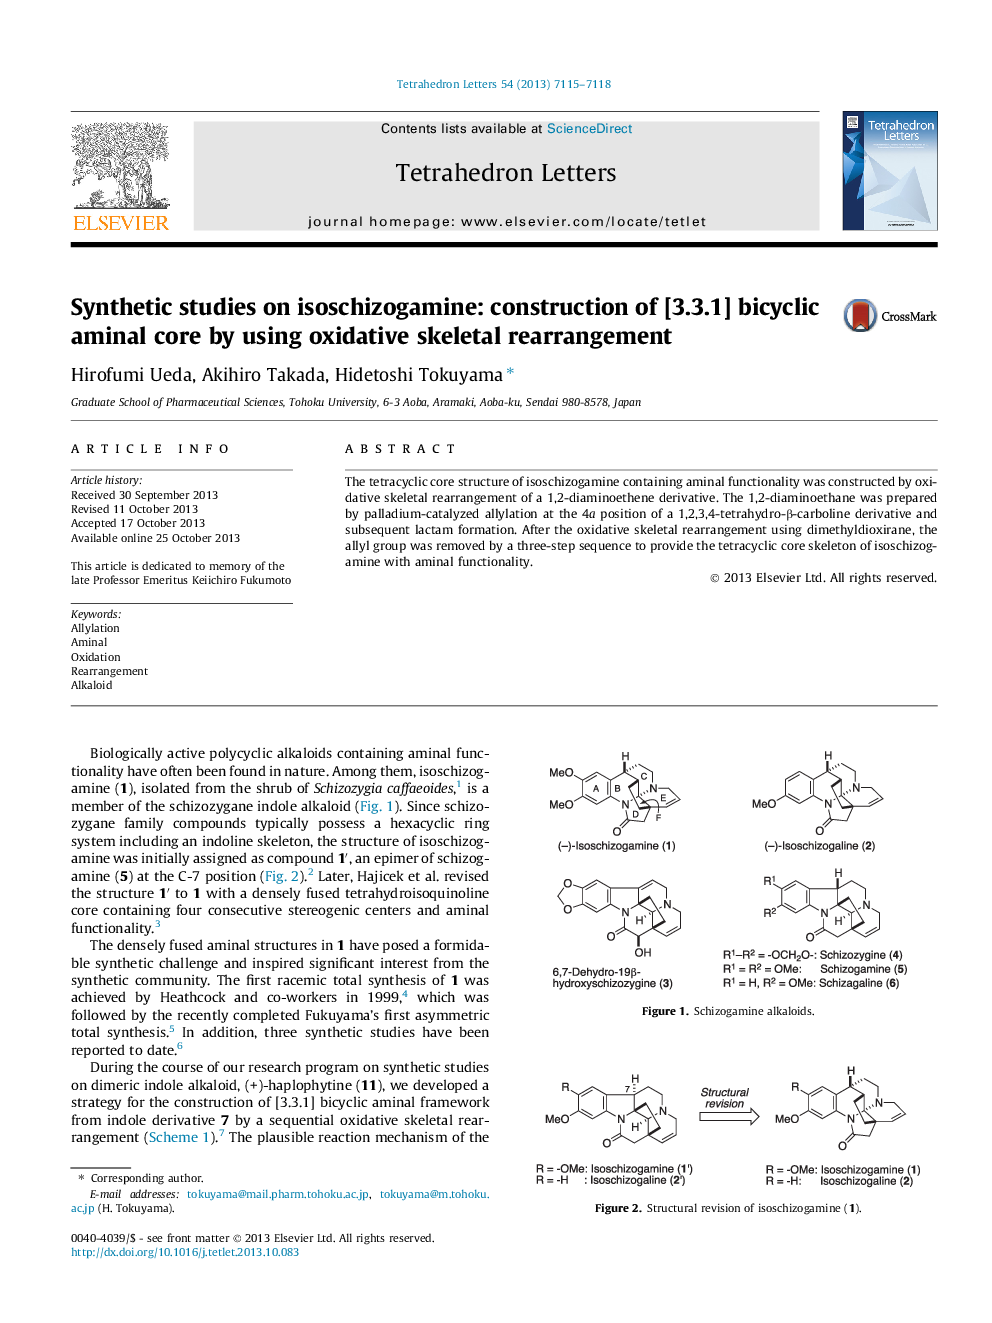 مطالعات مصنوعی در مورد ایزوسیزایگامین: ساخت هسته آمیکالی دو قاعده [3.3.1] با استفاده از بازآرایی اسکلتی اکسیداتیو 